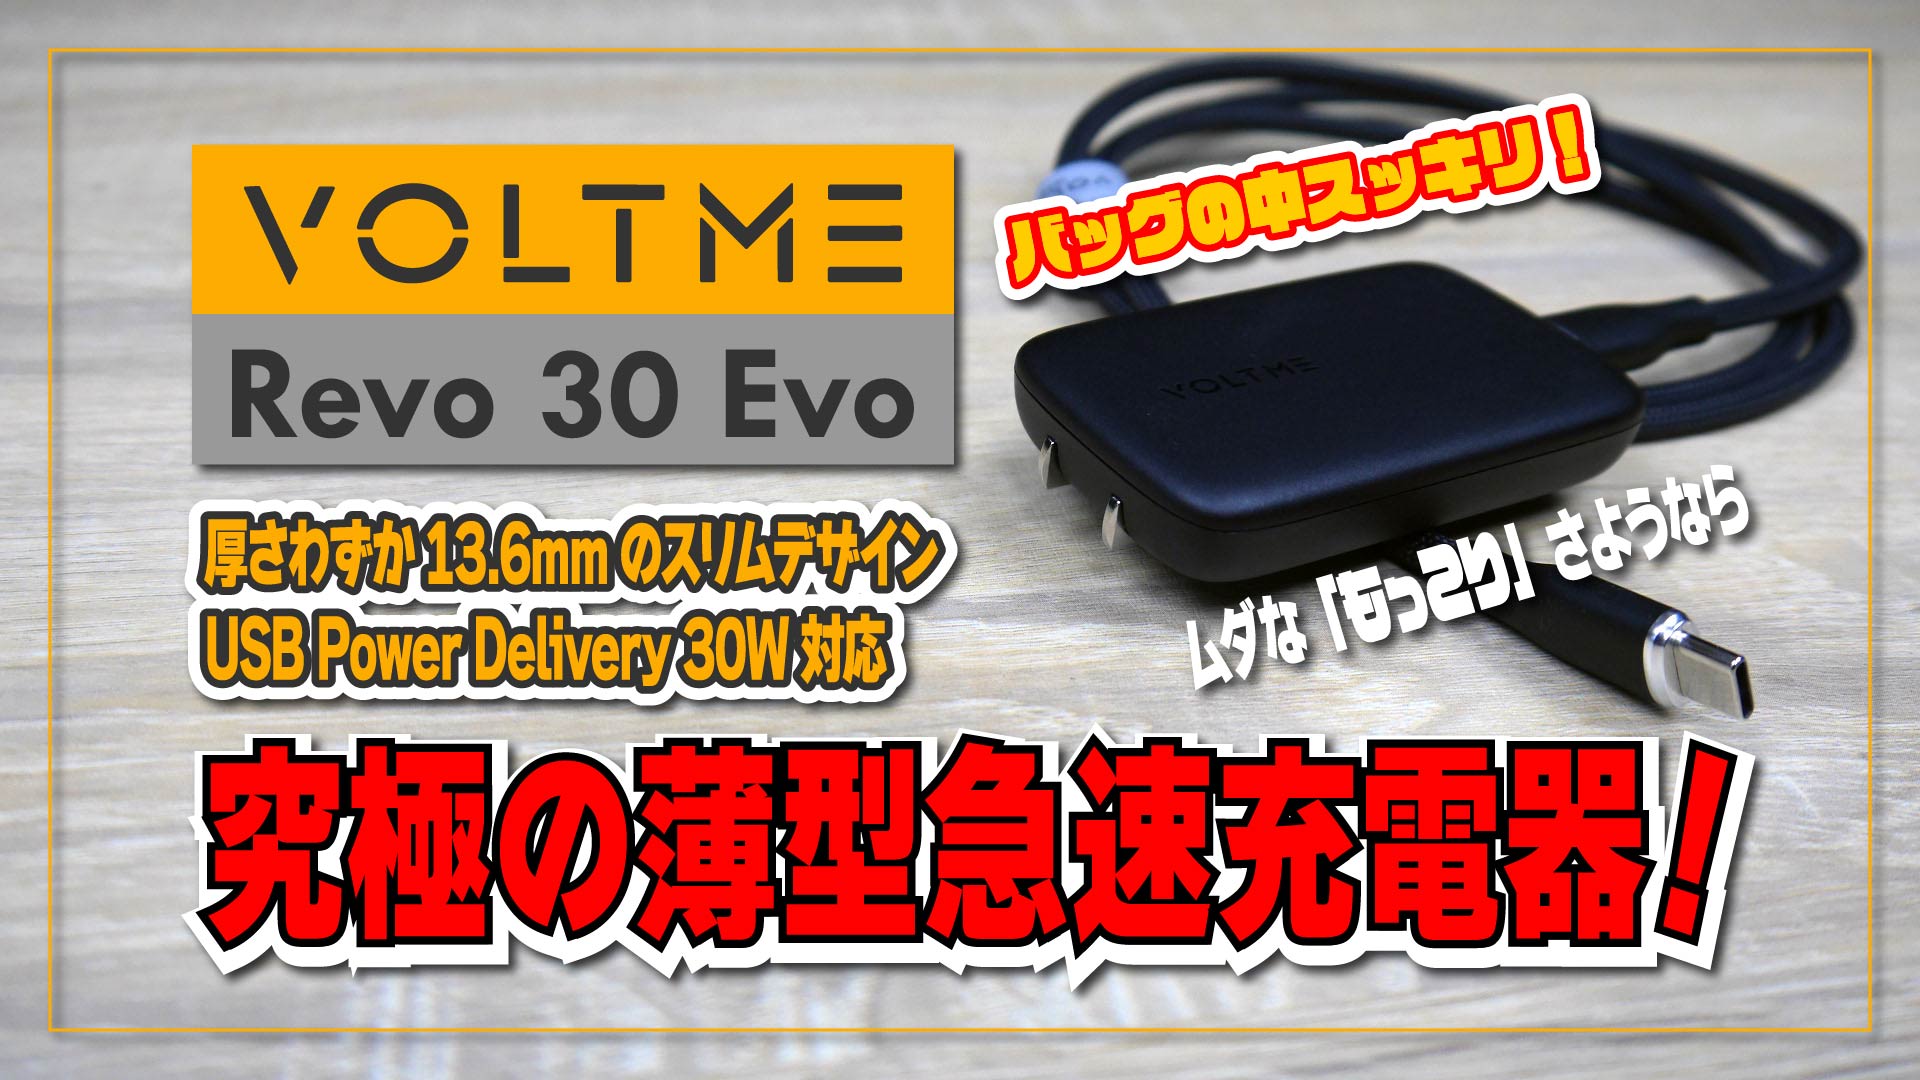 【実機レビュー】VOLTME Revo 30 Evo バッグの中をスッキリ！さようなら、邪魔者！究極の薄型急速充電器！